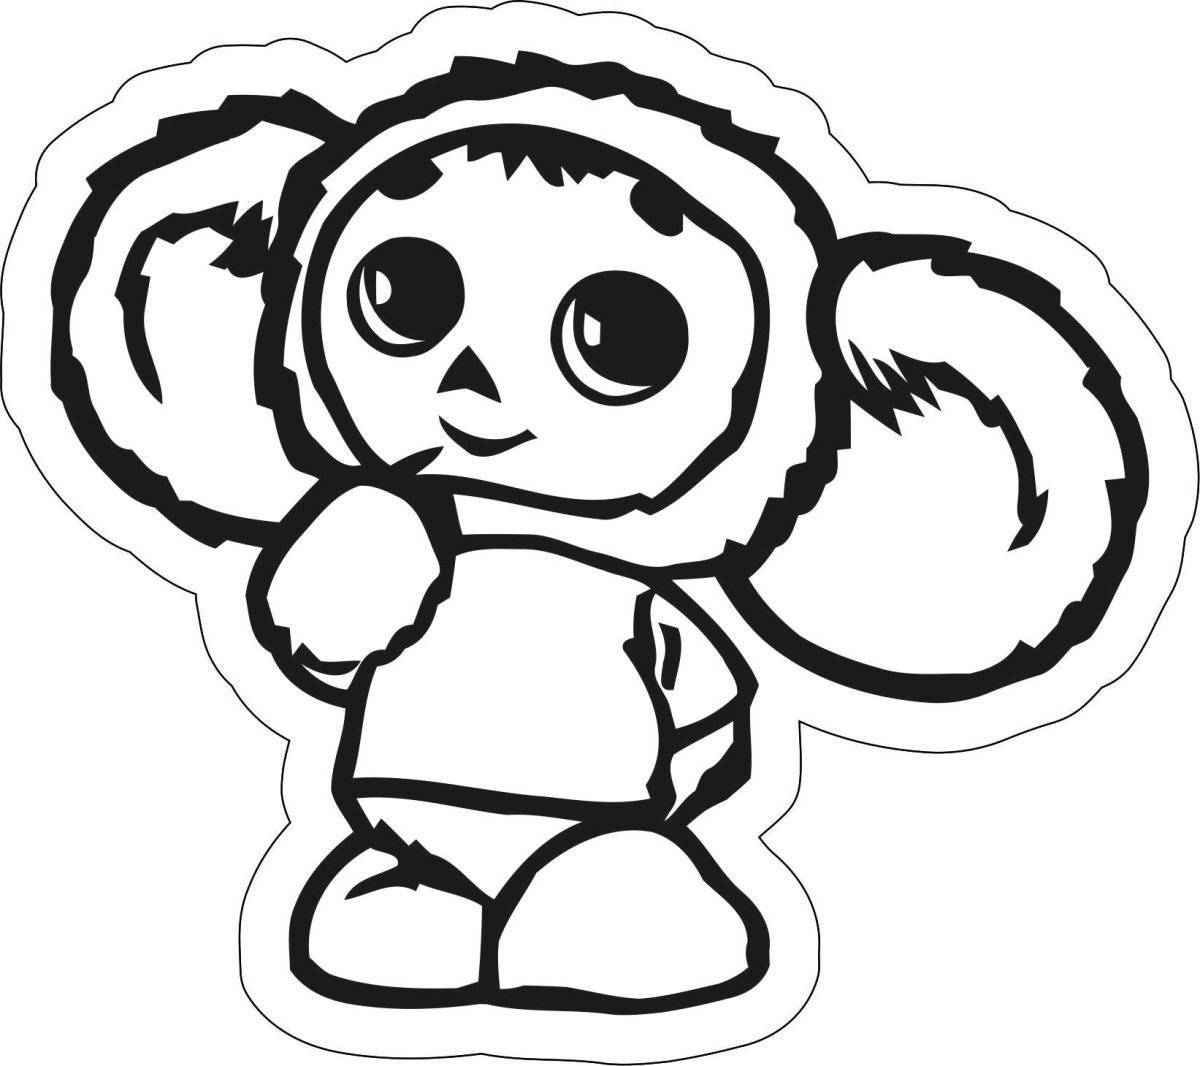 Cheburashka from the cartoon